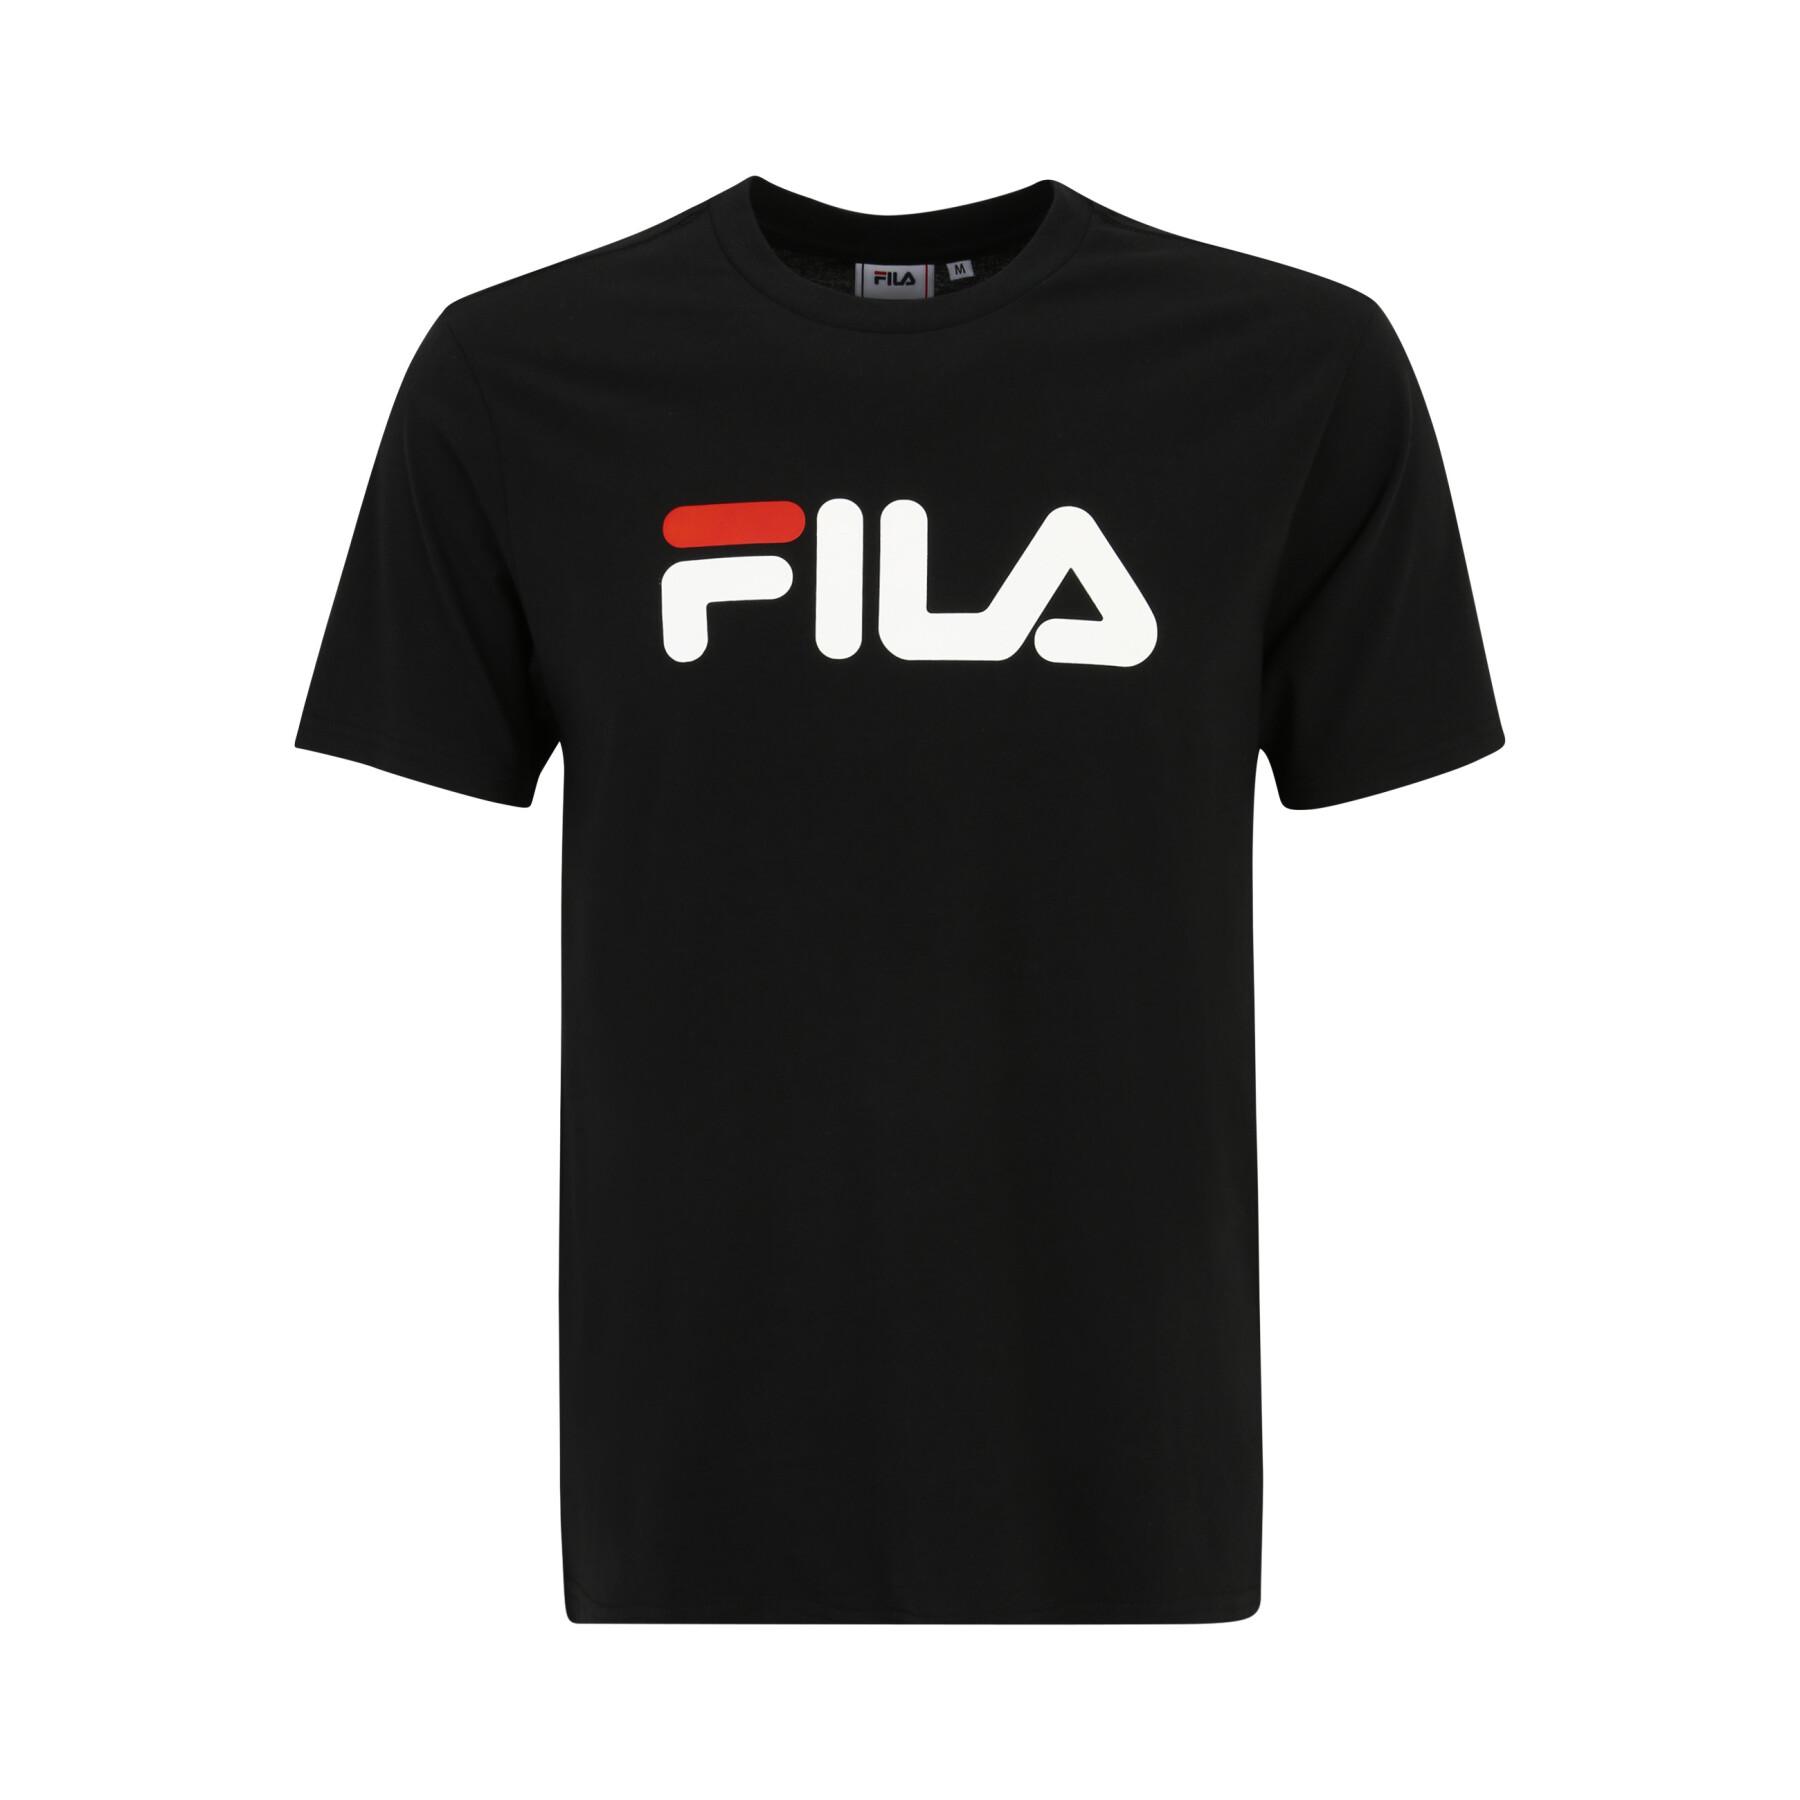 T-shirt Fila Bellano - T-shirts - Lifestyle Male - Lifestyle